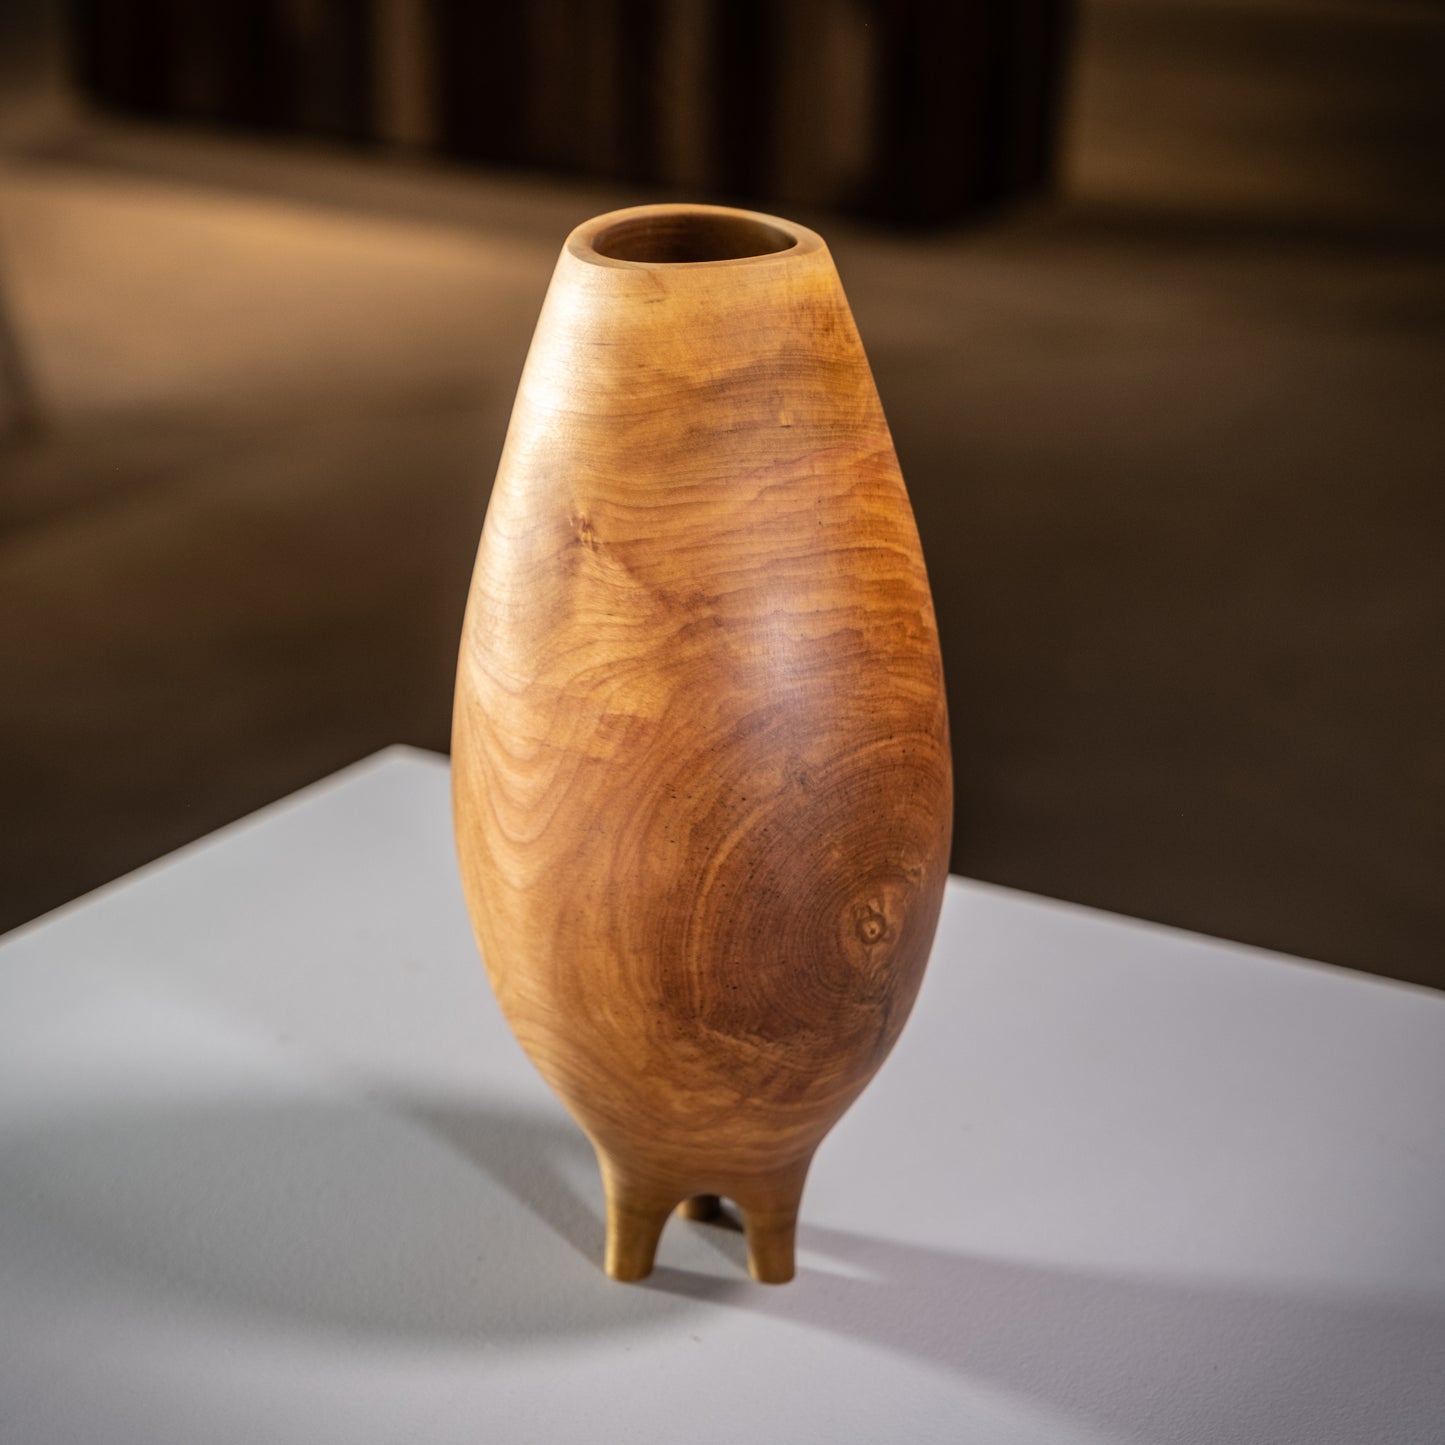 Maine Birch Vase - 2022